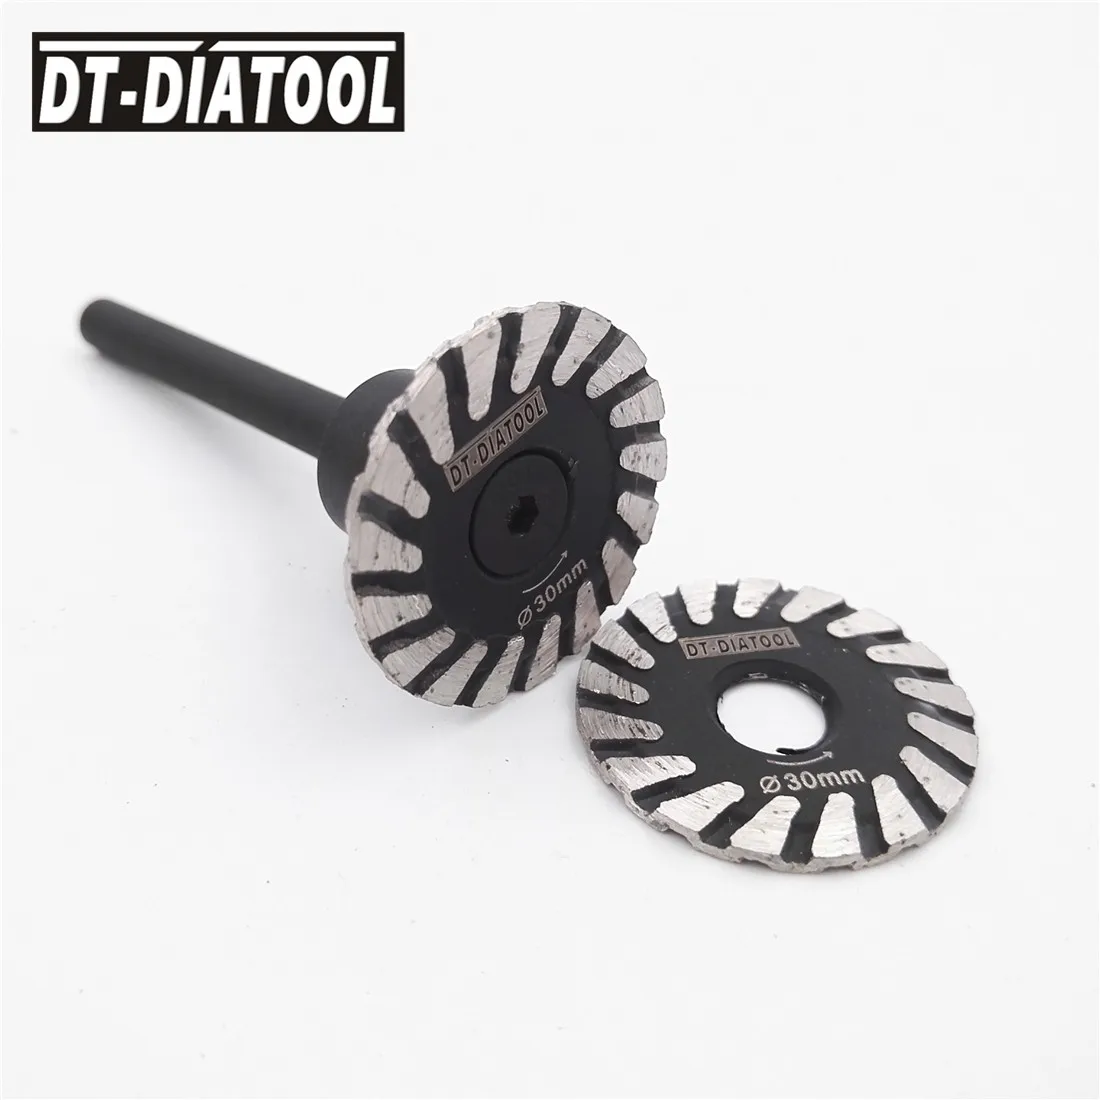 DT-DIATOOL 2stk Mini Diamond savklinge Udtagelig 6 mm Skaft Turbo svinghjul for Granit, Marmor, Sten, Beton slibeskive 4